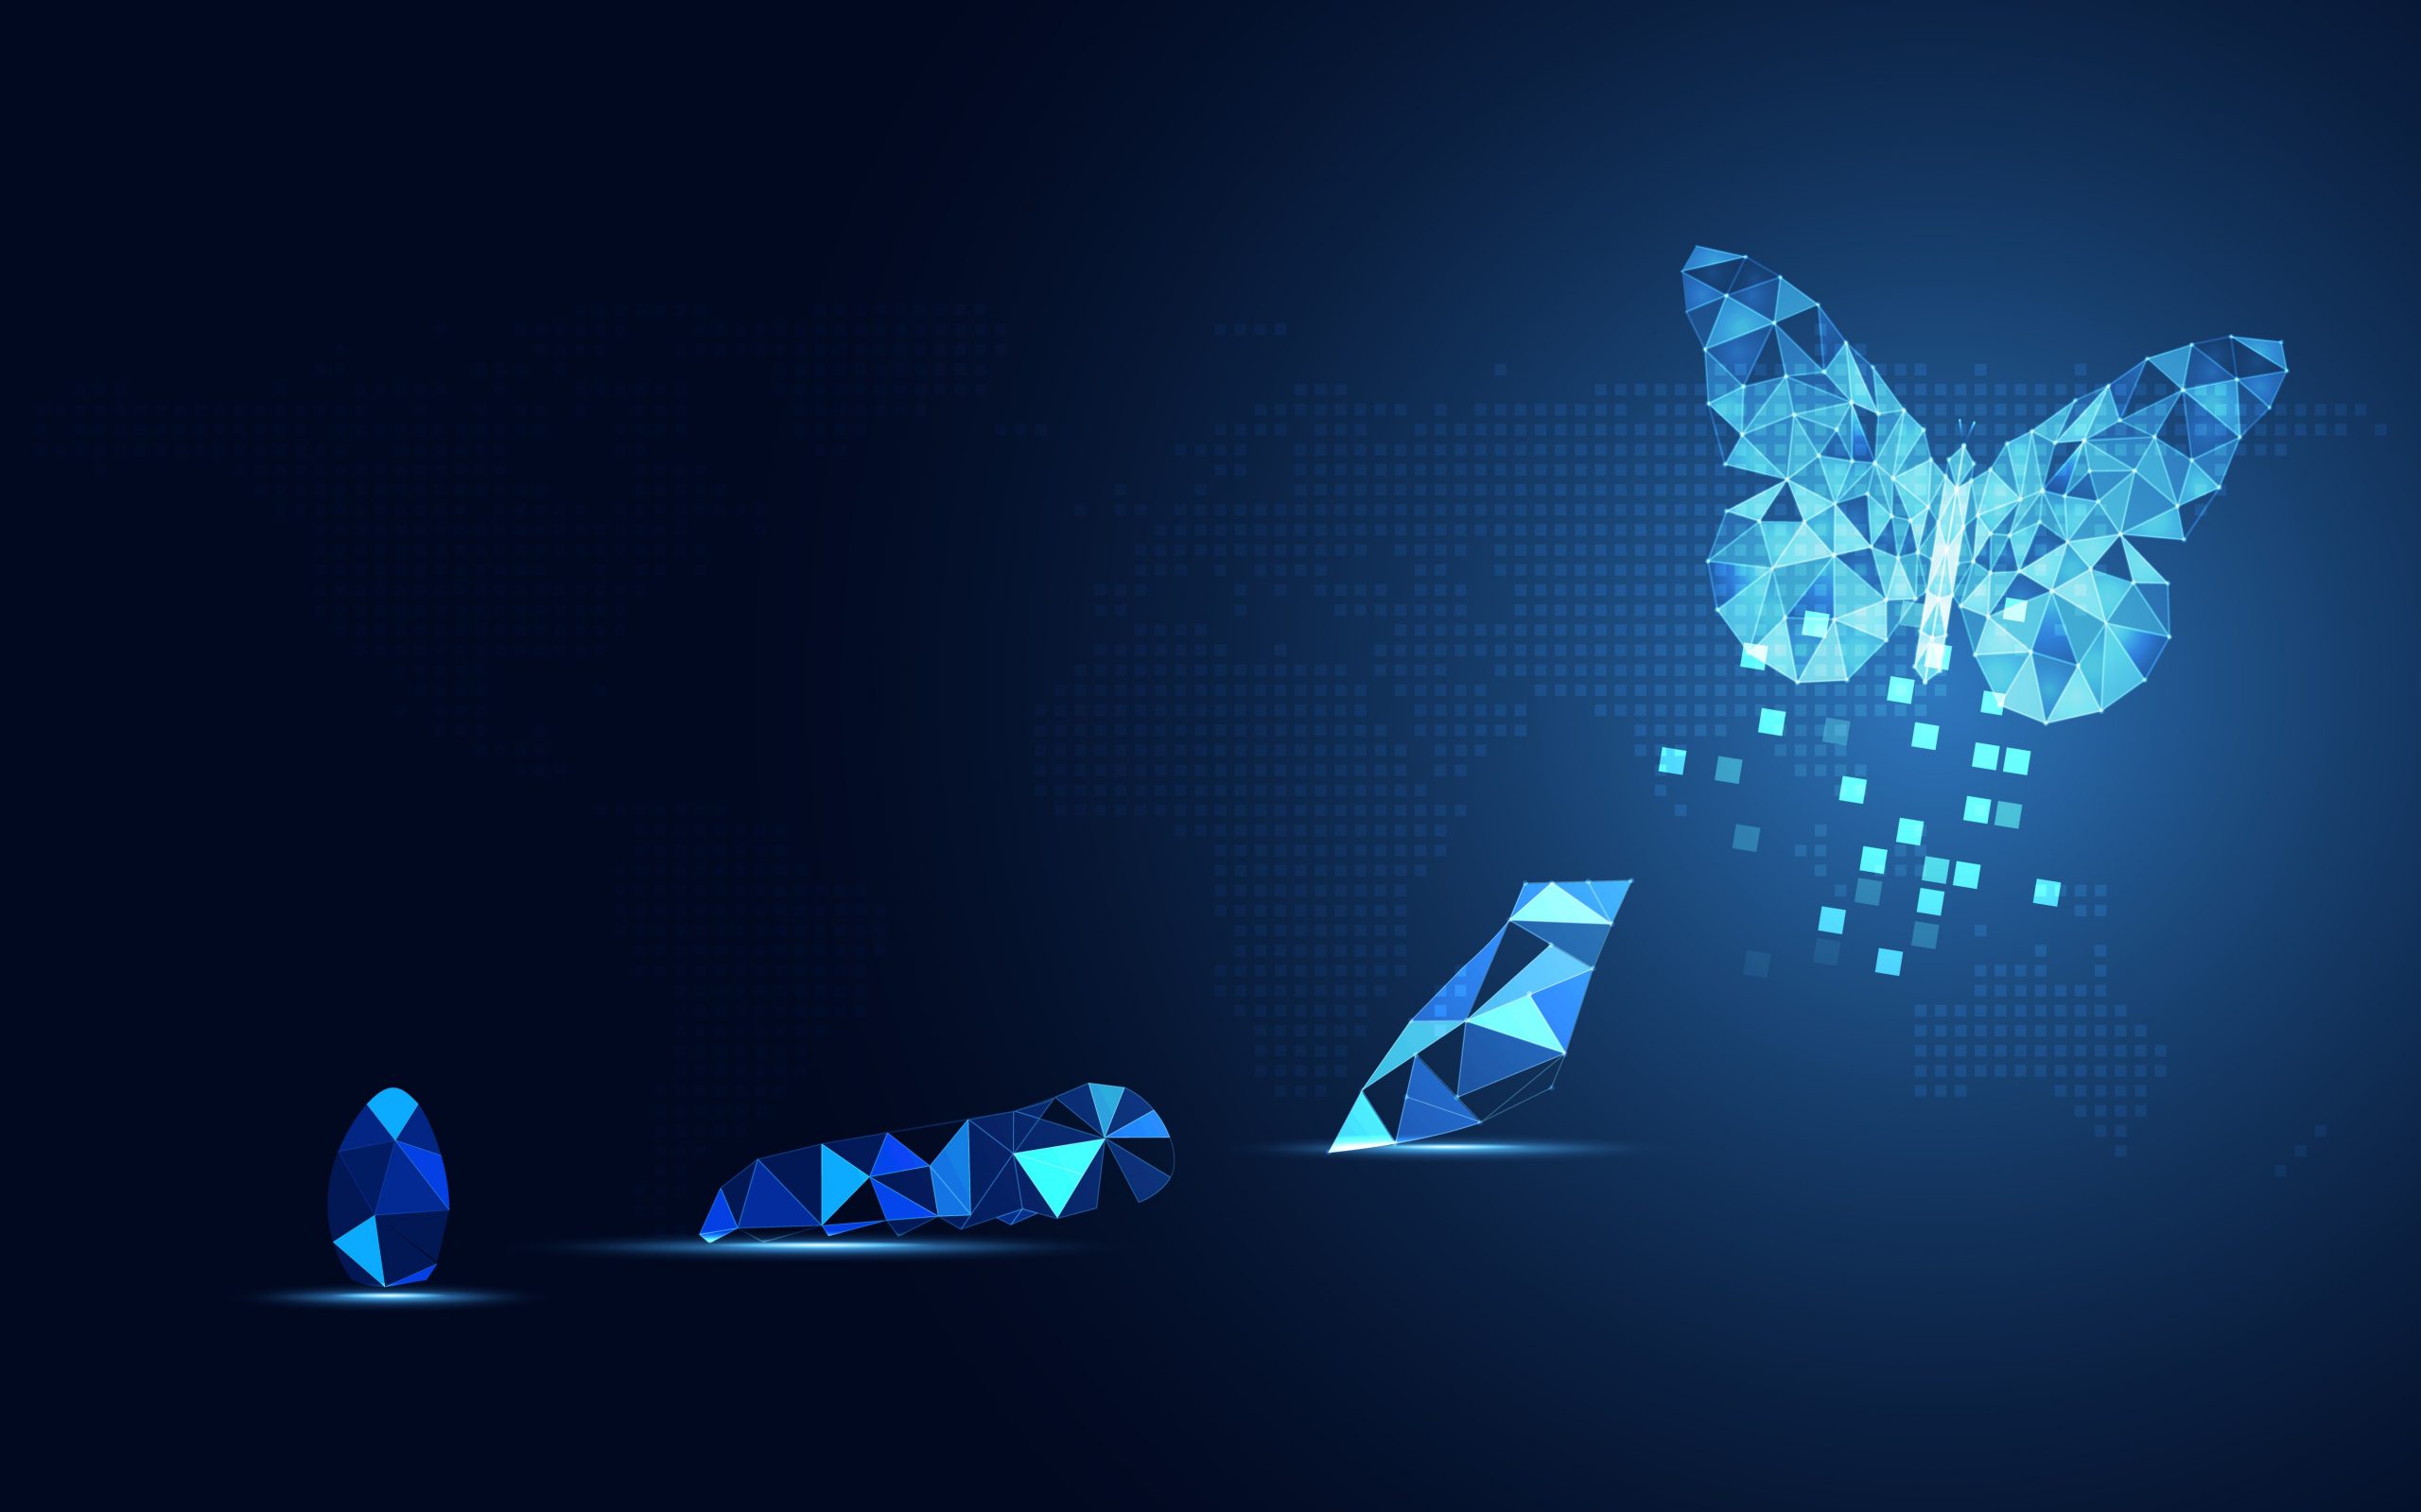 Schwarzer Hintergrund, rechts im bild ist ein digital gezeichneter Schmetterling in Blau das leuchtet er durchgeht eine art transformation